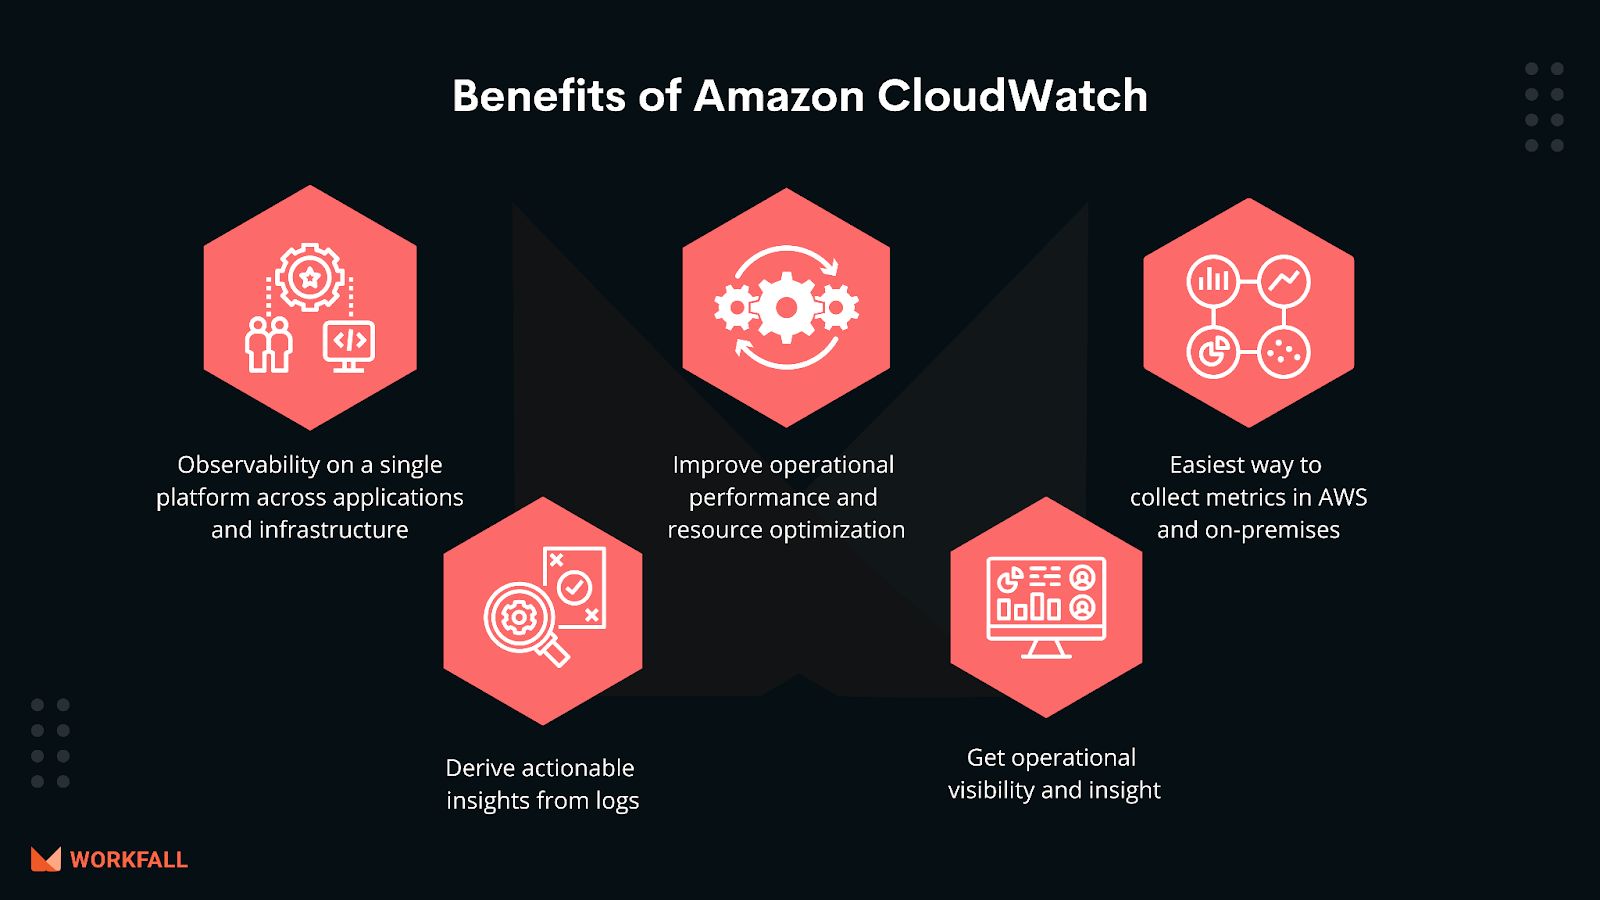 Benefits of using Amazon CloudWatch